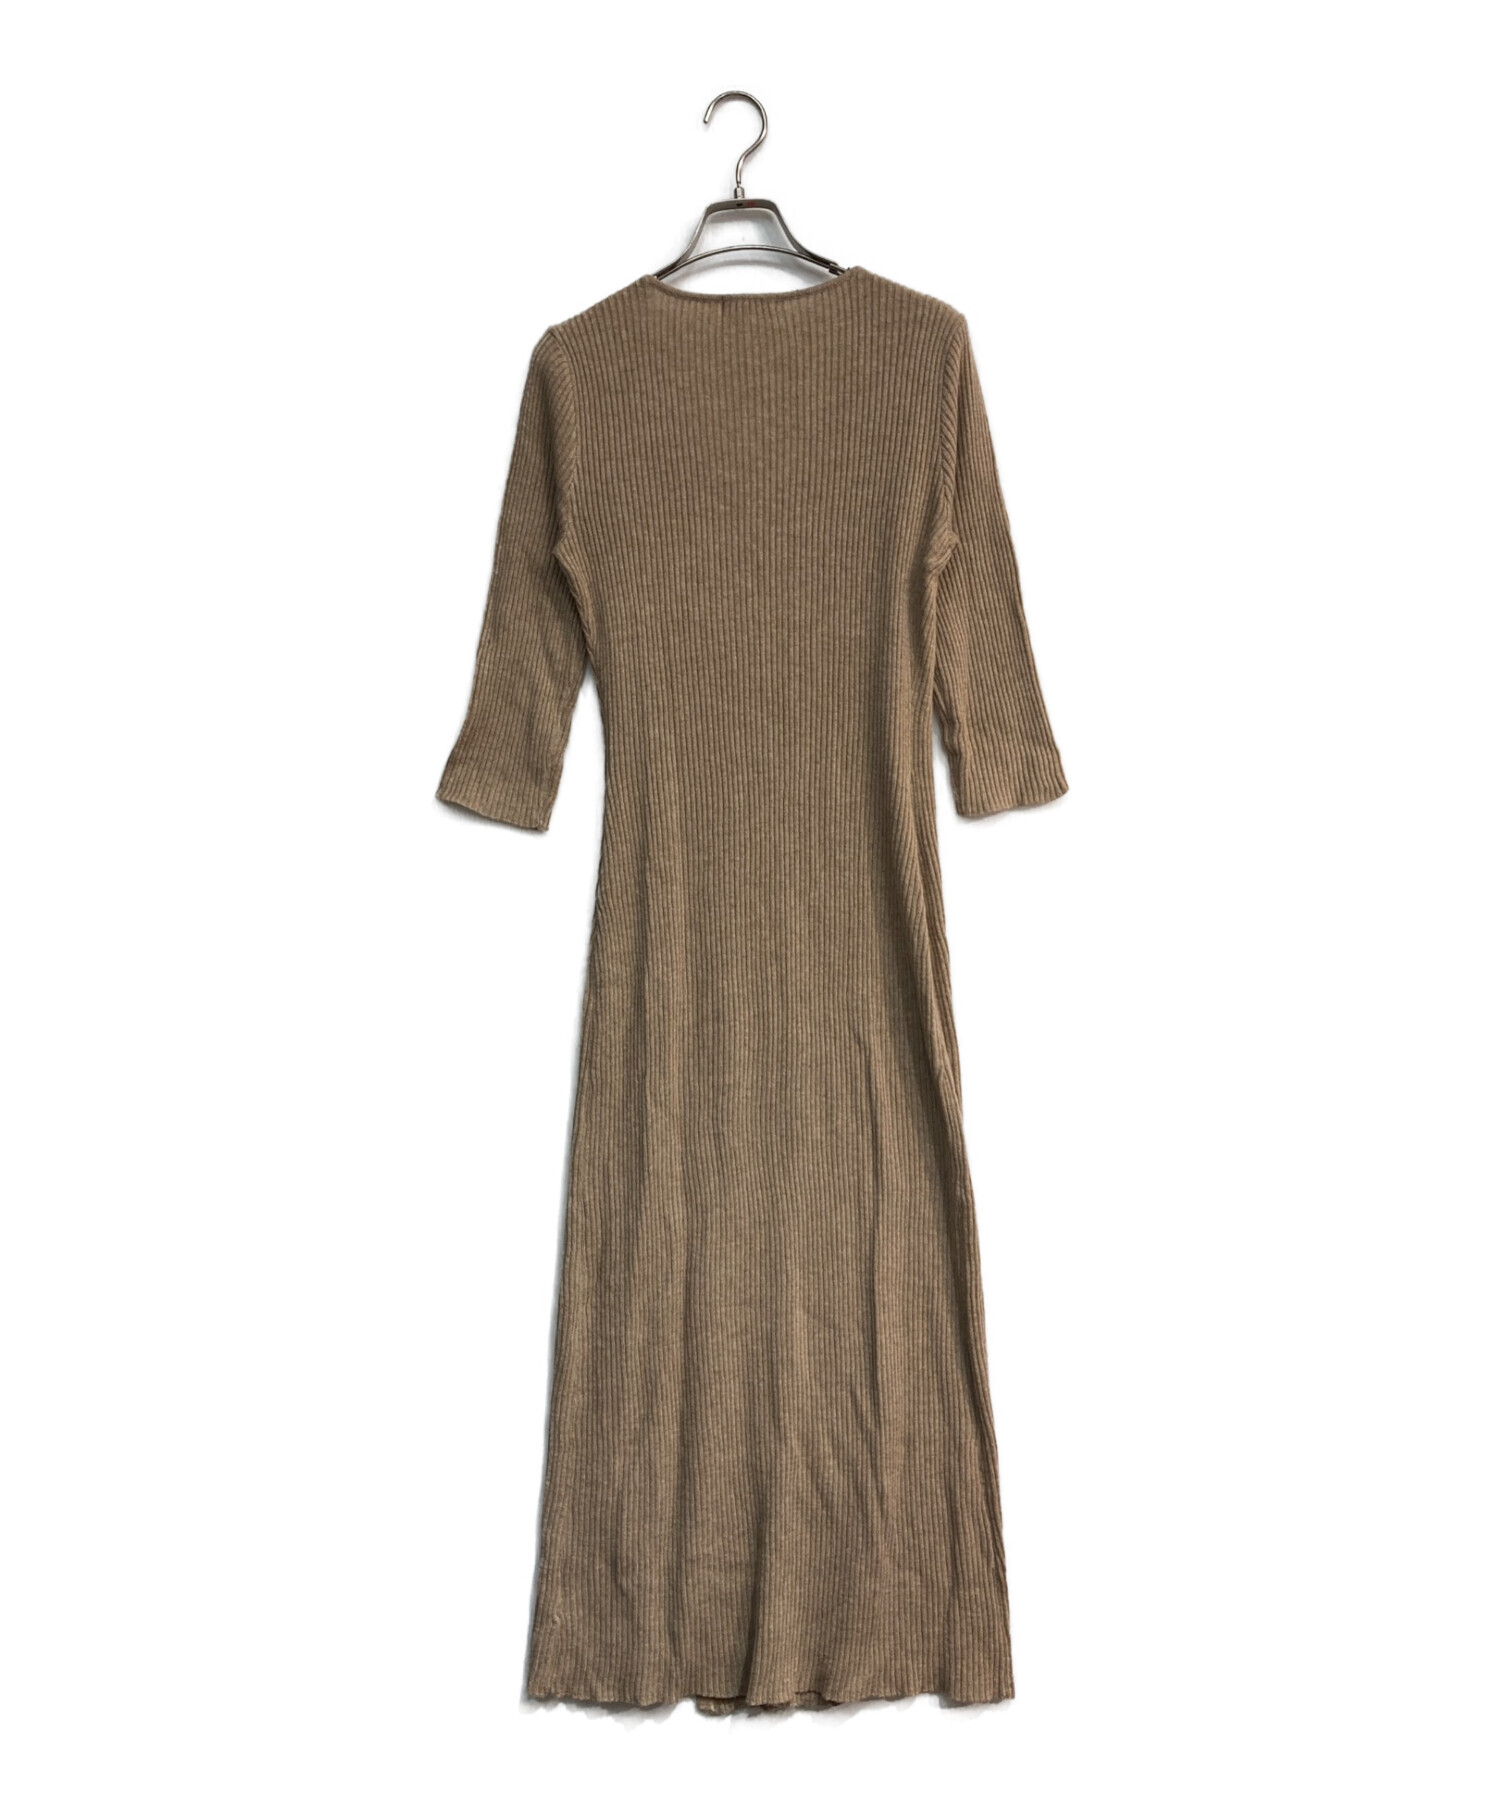 L'Or (ロル) Cache-coeur Knit Dress　or214-73　ベージュ　ニットワンピース ベージュ サイズ:Free